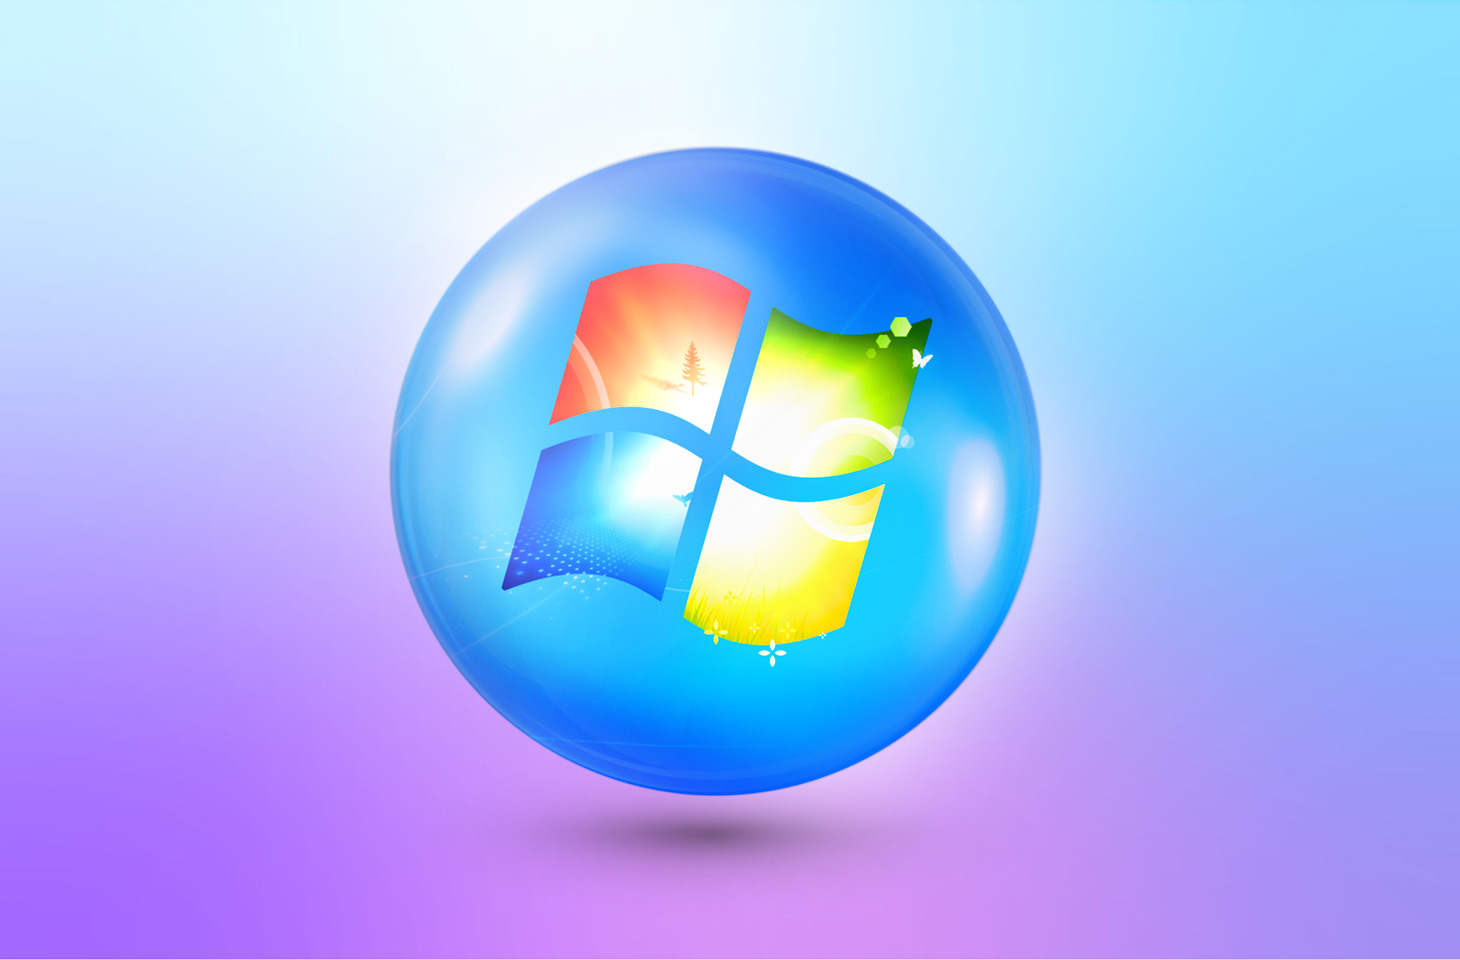 Ativador Windows 7 